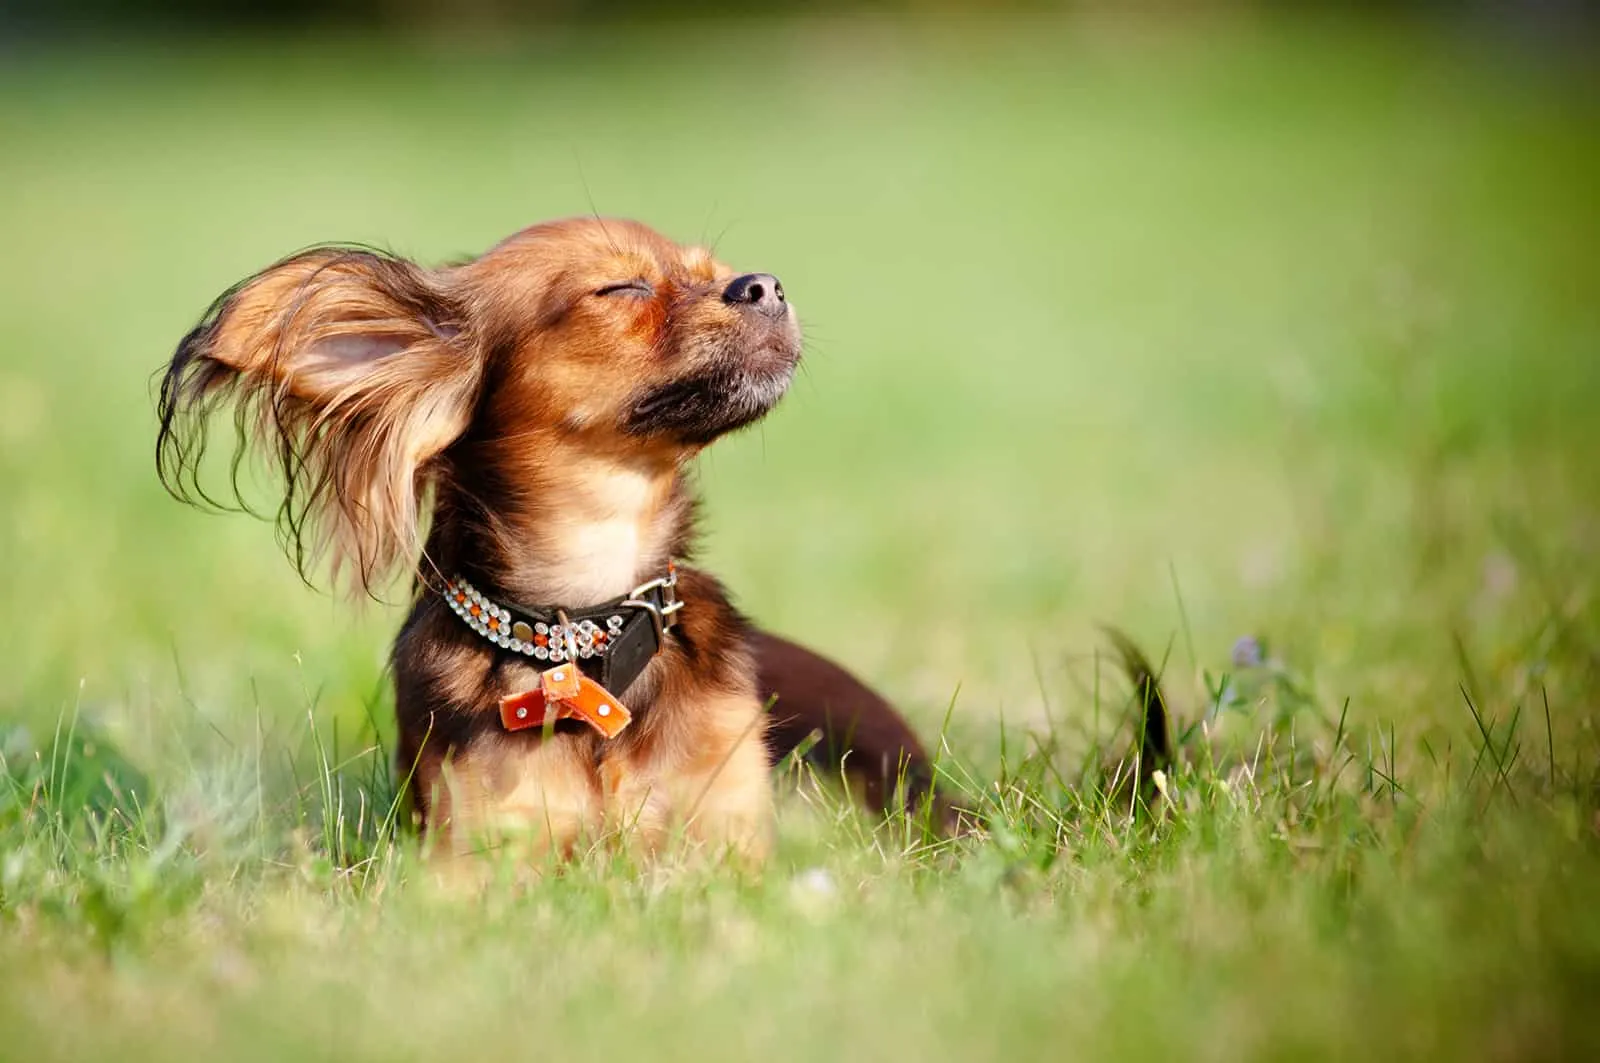 russian toy terrier enjoying the sun